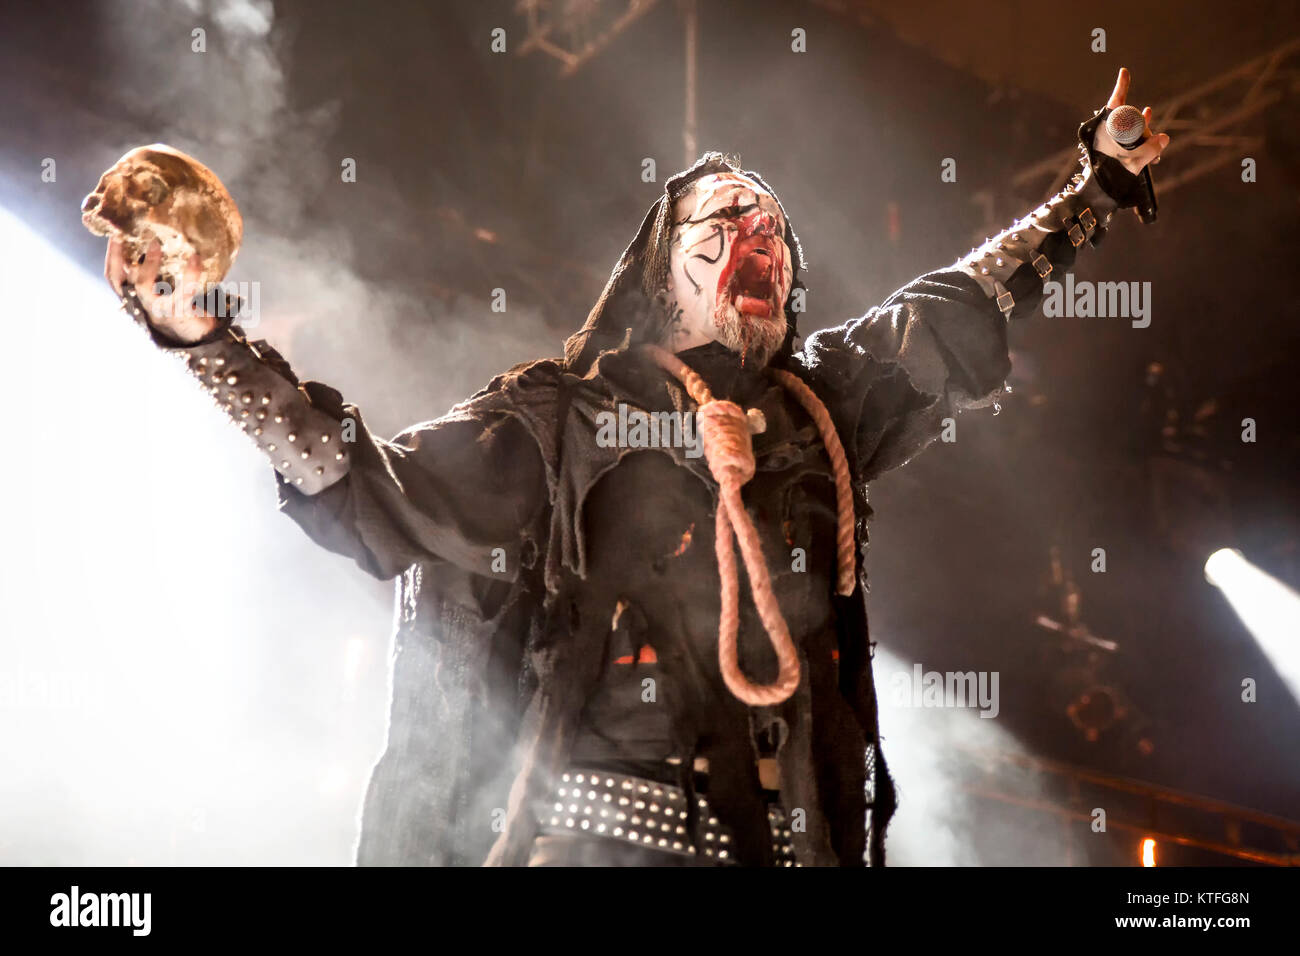 Die norwegische Black-Metal-Band Mayhem führt ein Live Konzert in der norwegischen Musik Festival Øyafestivalen 2014. Hier Sänger Attila Csihar wird gesehen, live auf der Bühne. Norwegen, 08.08.2014. Stockfoto